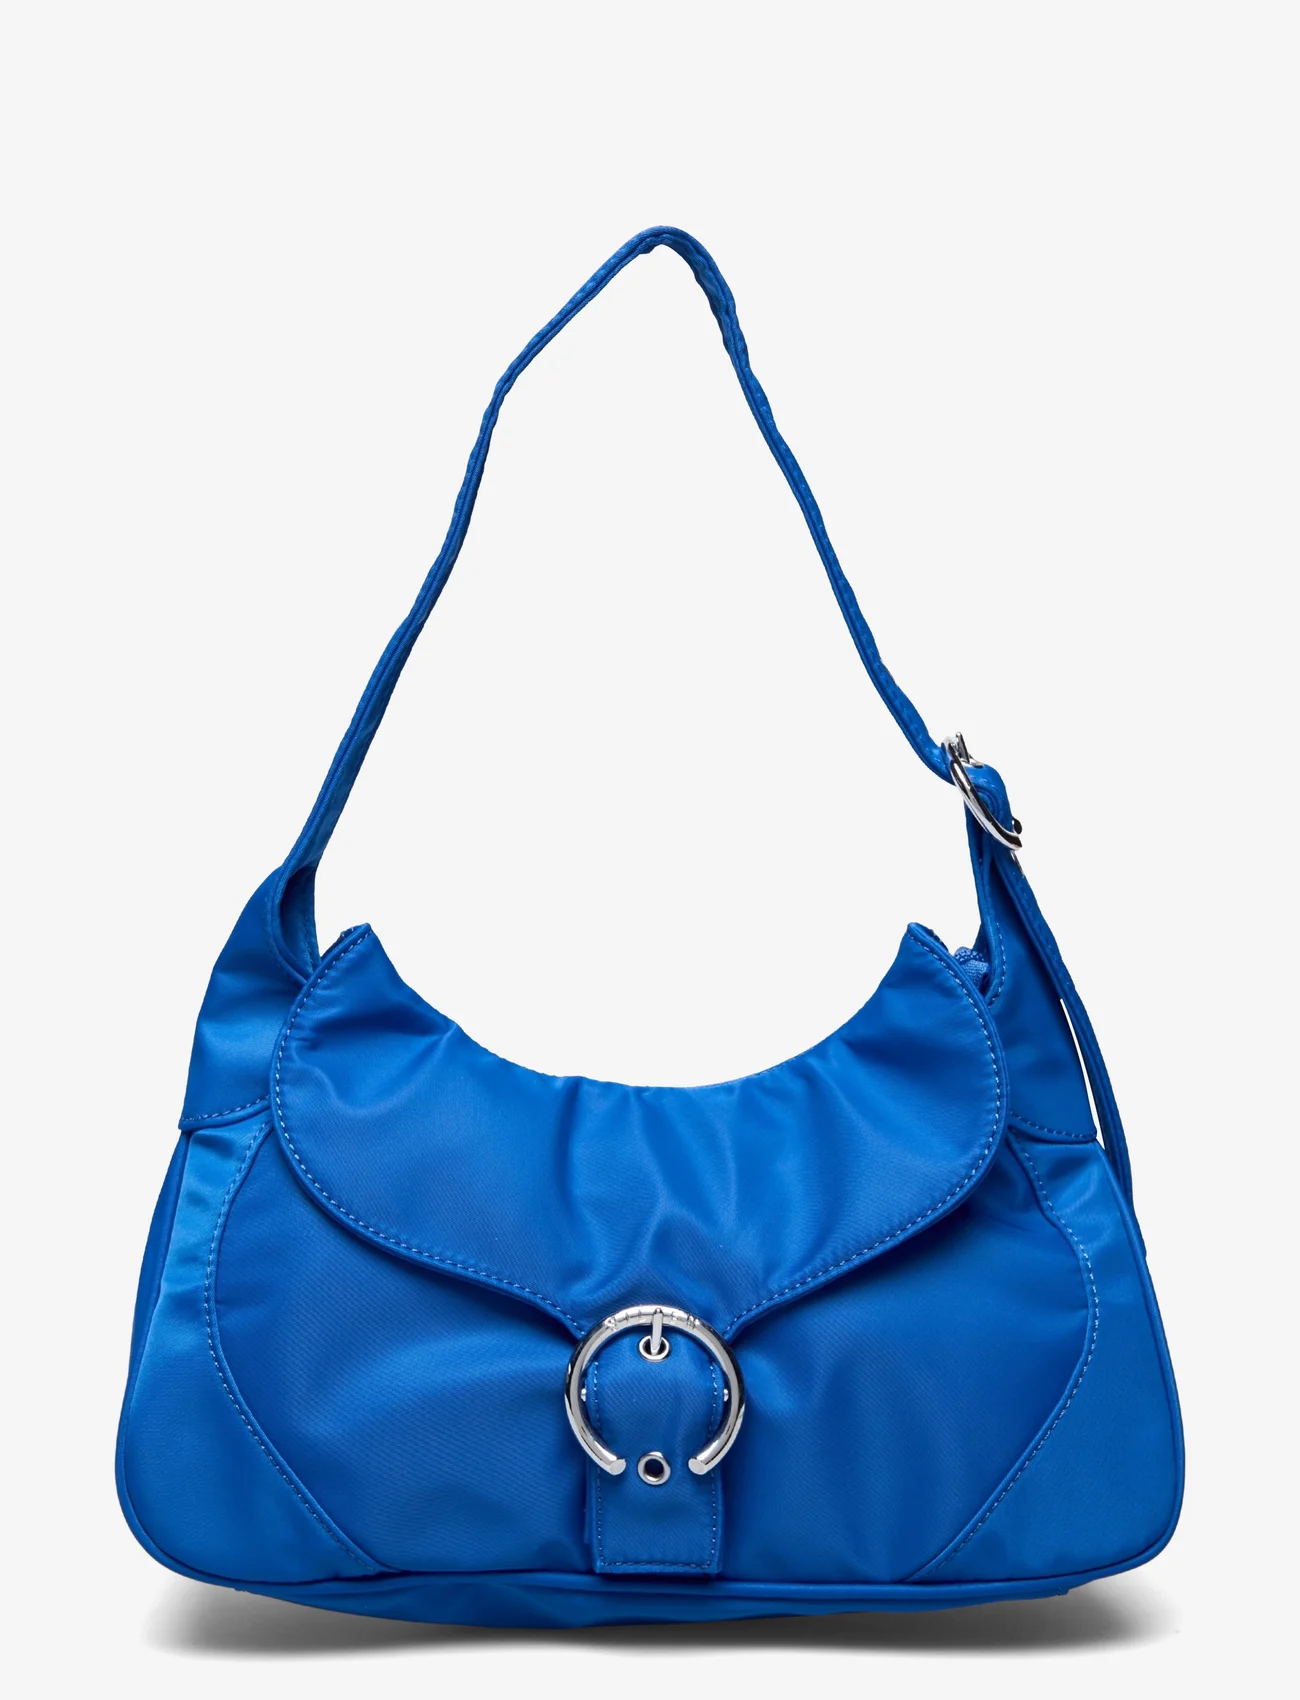 Silfen - Thea - Buckle Shoulder Bag - festklær til outlet-priser - royal blue - 0